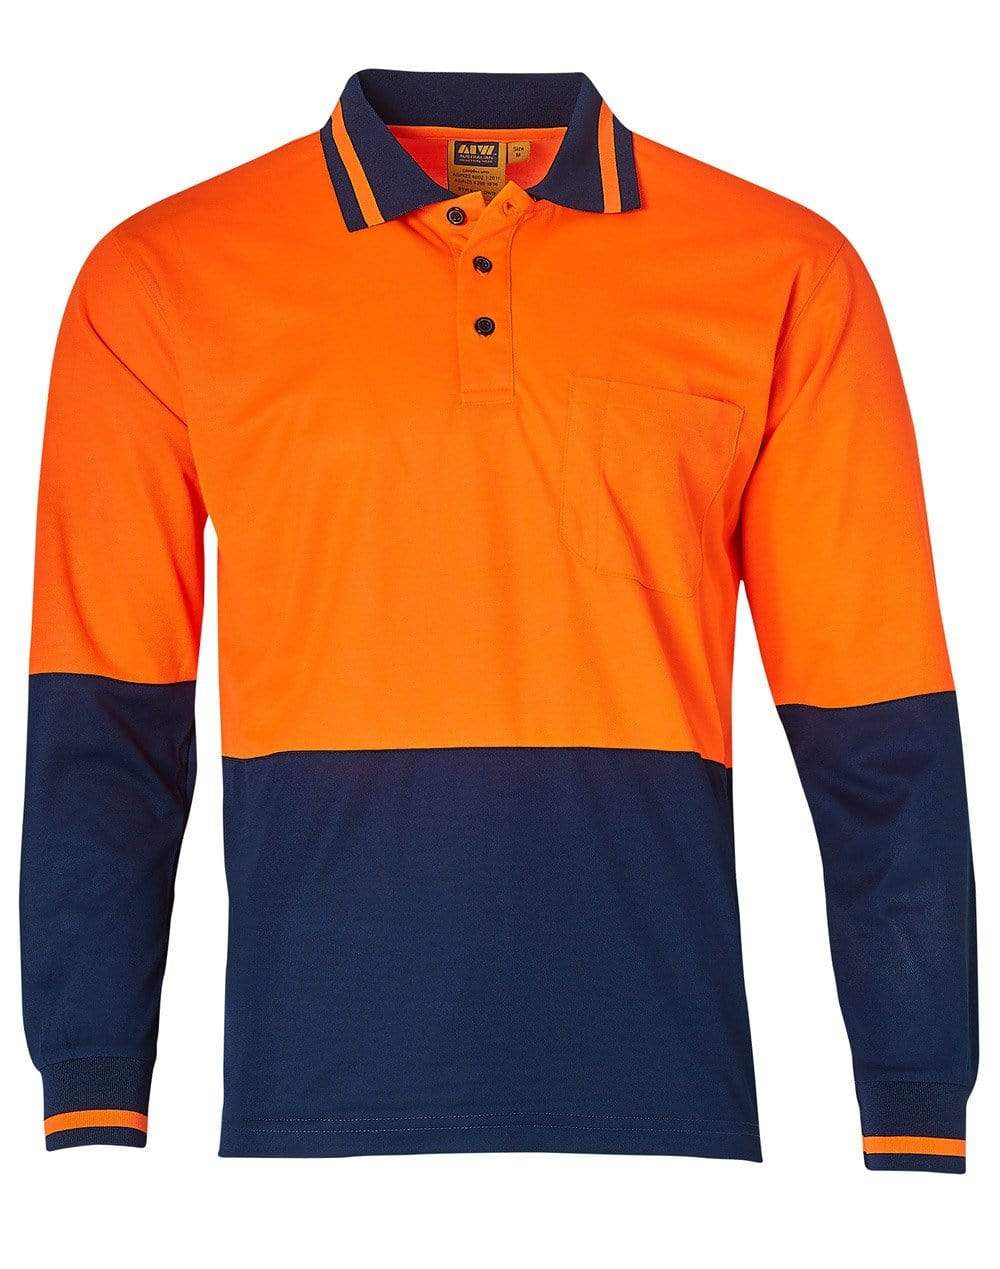 Safety Polo SW11 Work Wear Australian Industrial Wear S Fluoro Orange/Navy 